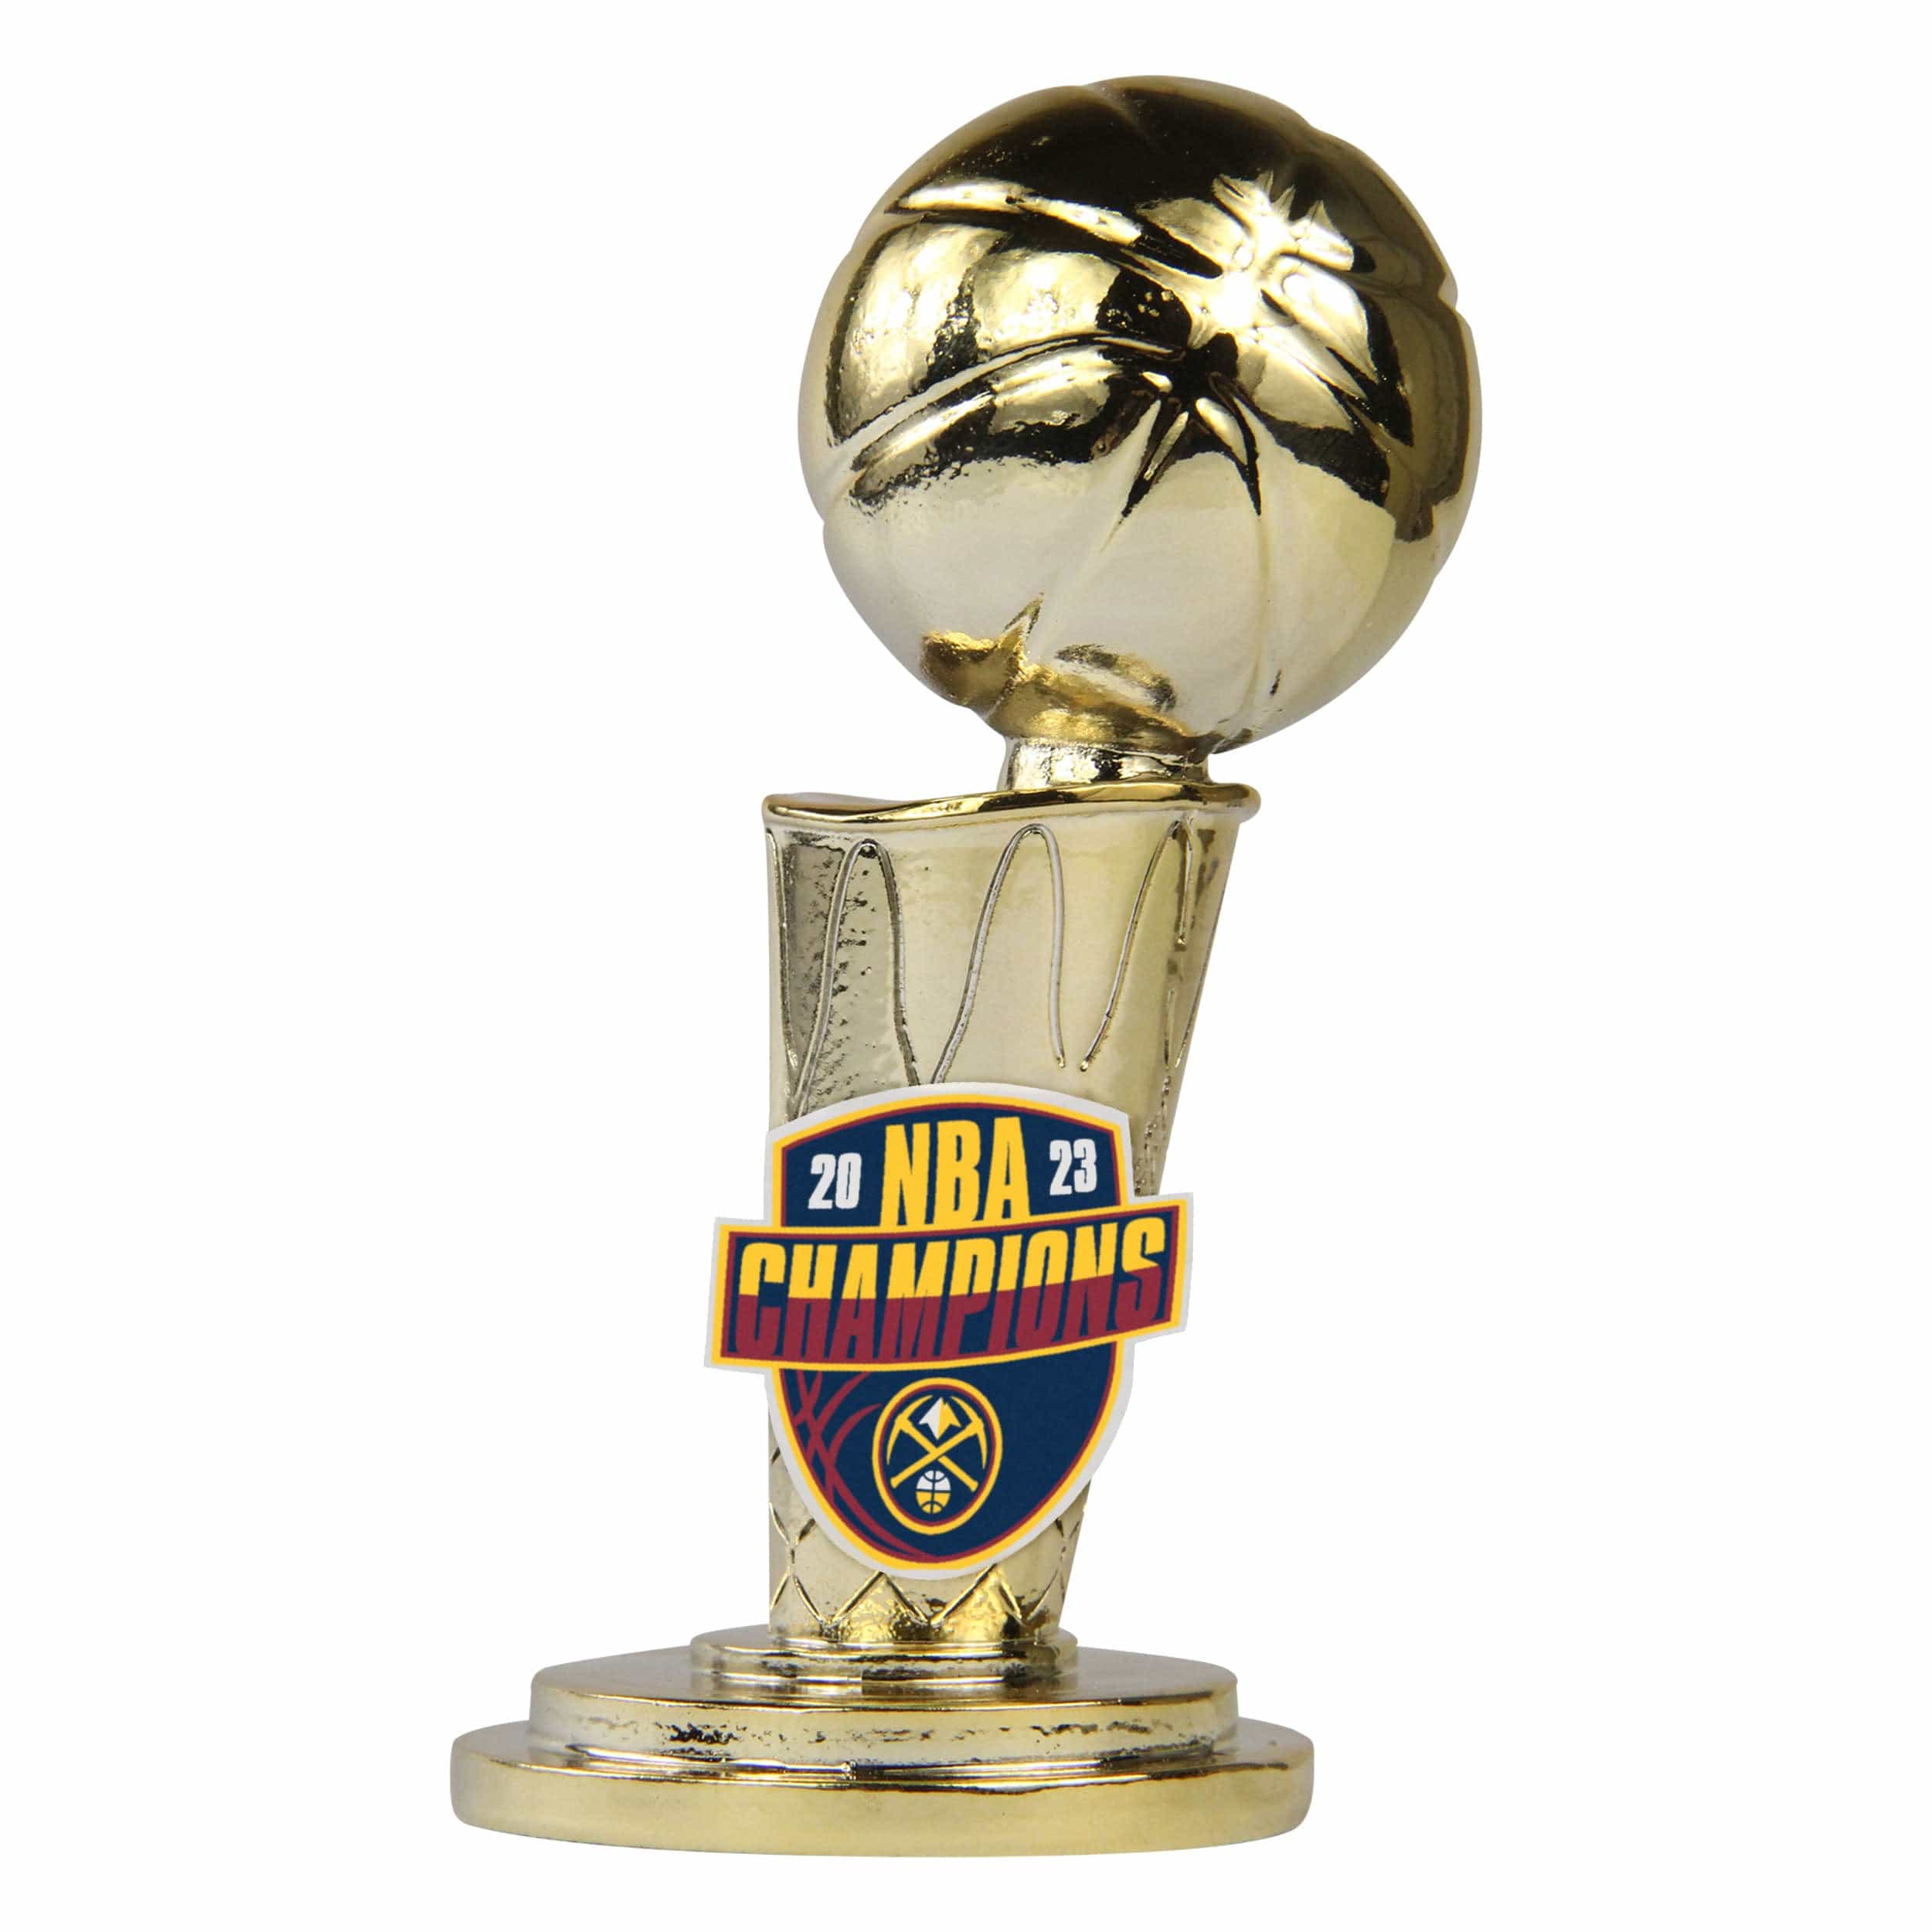 Denver Nuggets 2023 NBA Finals Champions, Digital Download, NBA Champions  2023